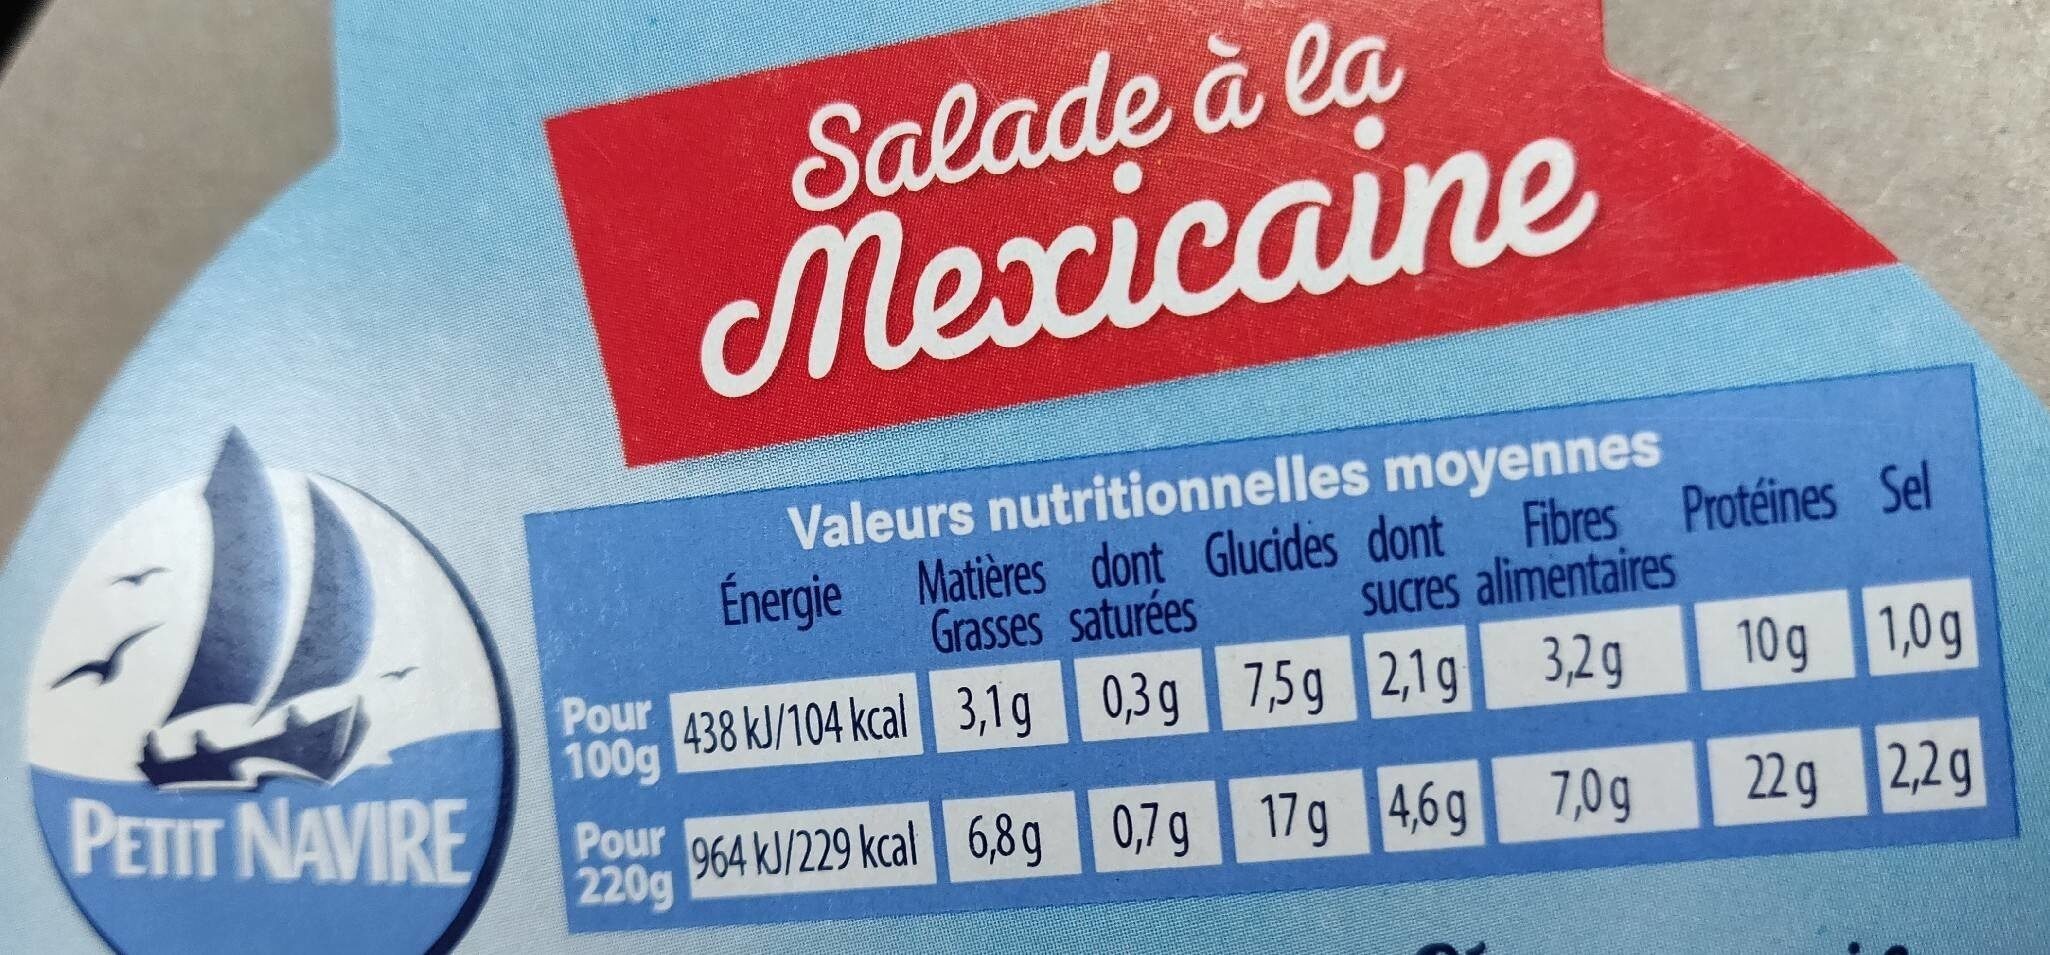 Salade à la mexicaine - Tableau nutritionnel